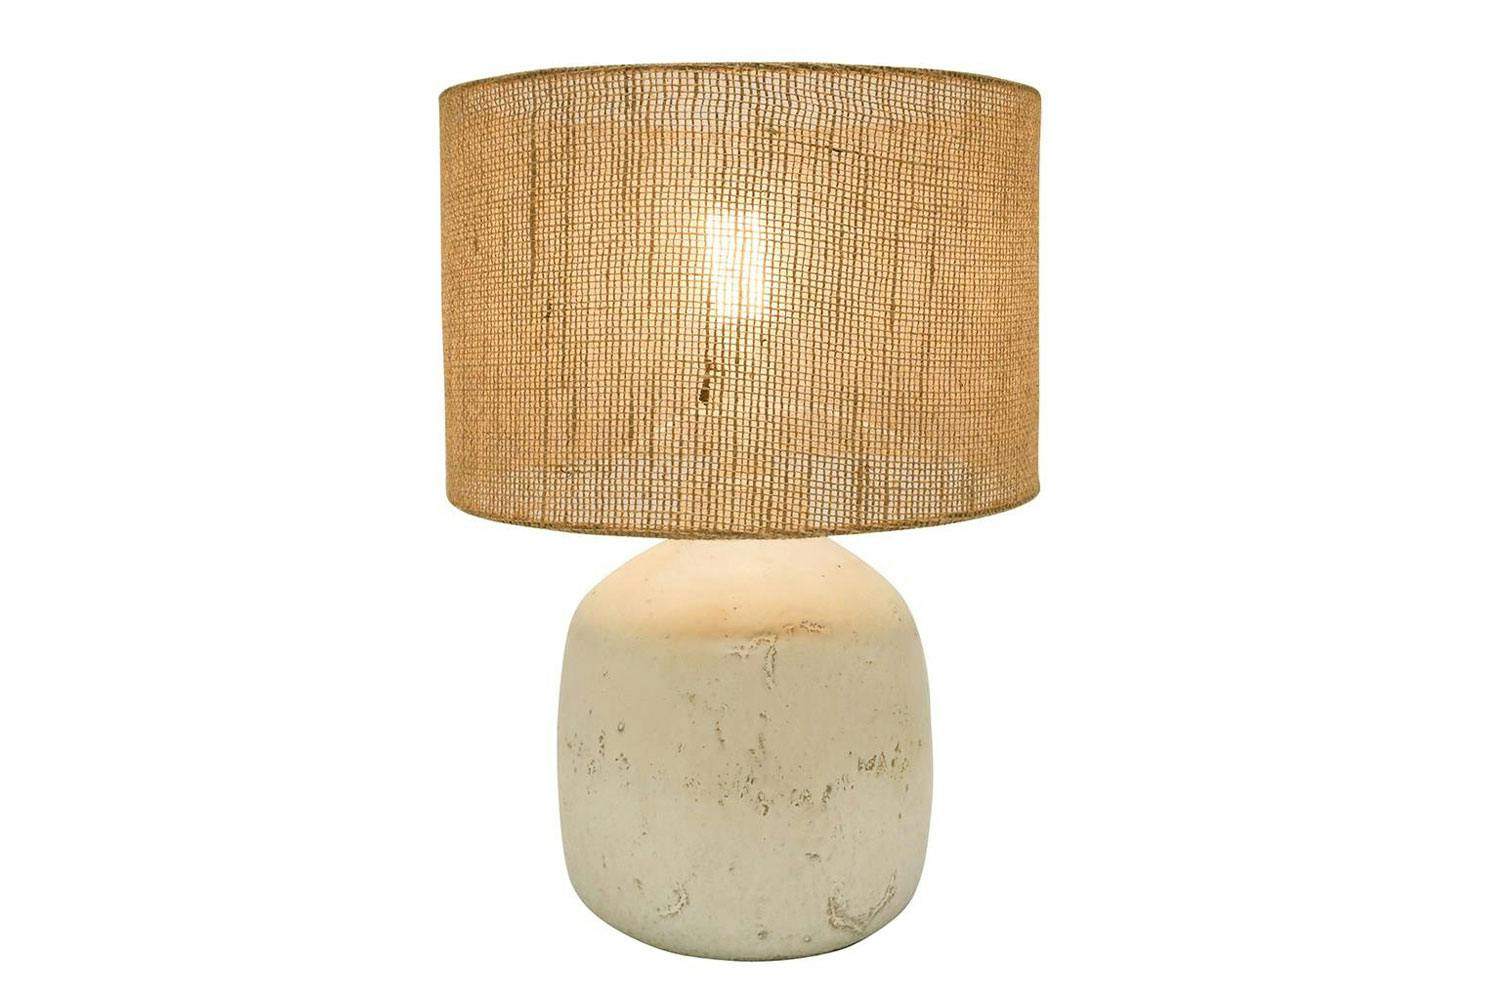 Alira 47cm Table Lamp by Banyan - White